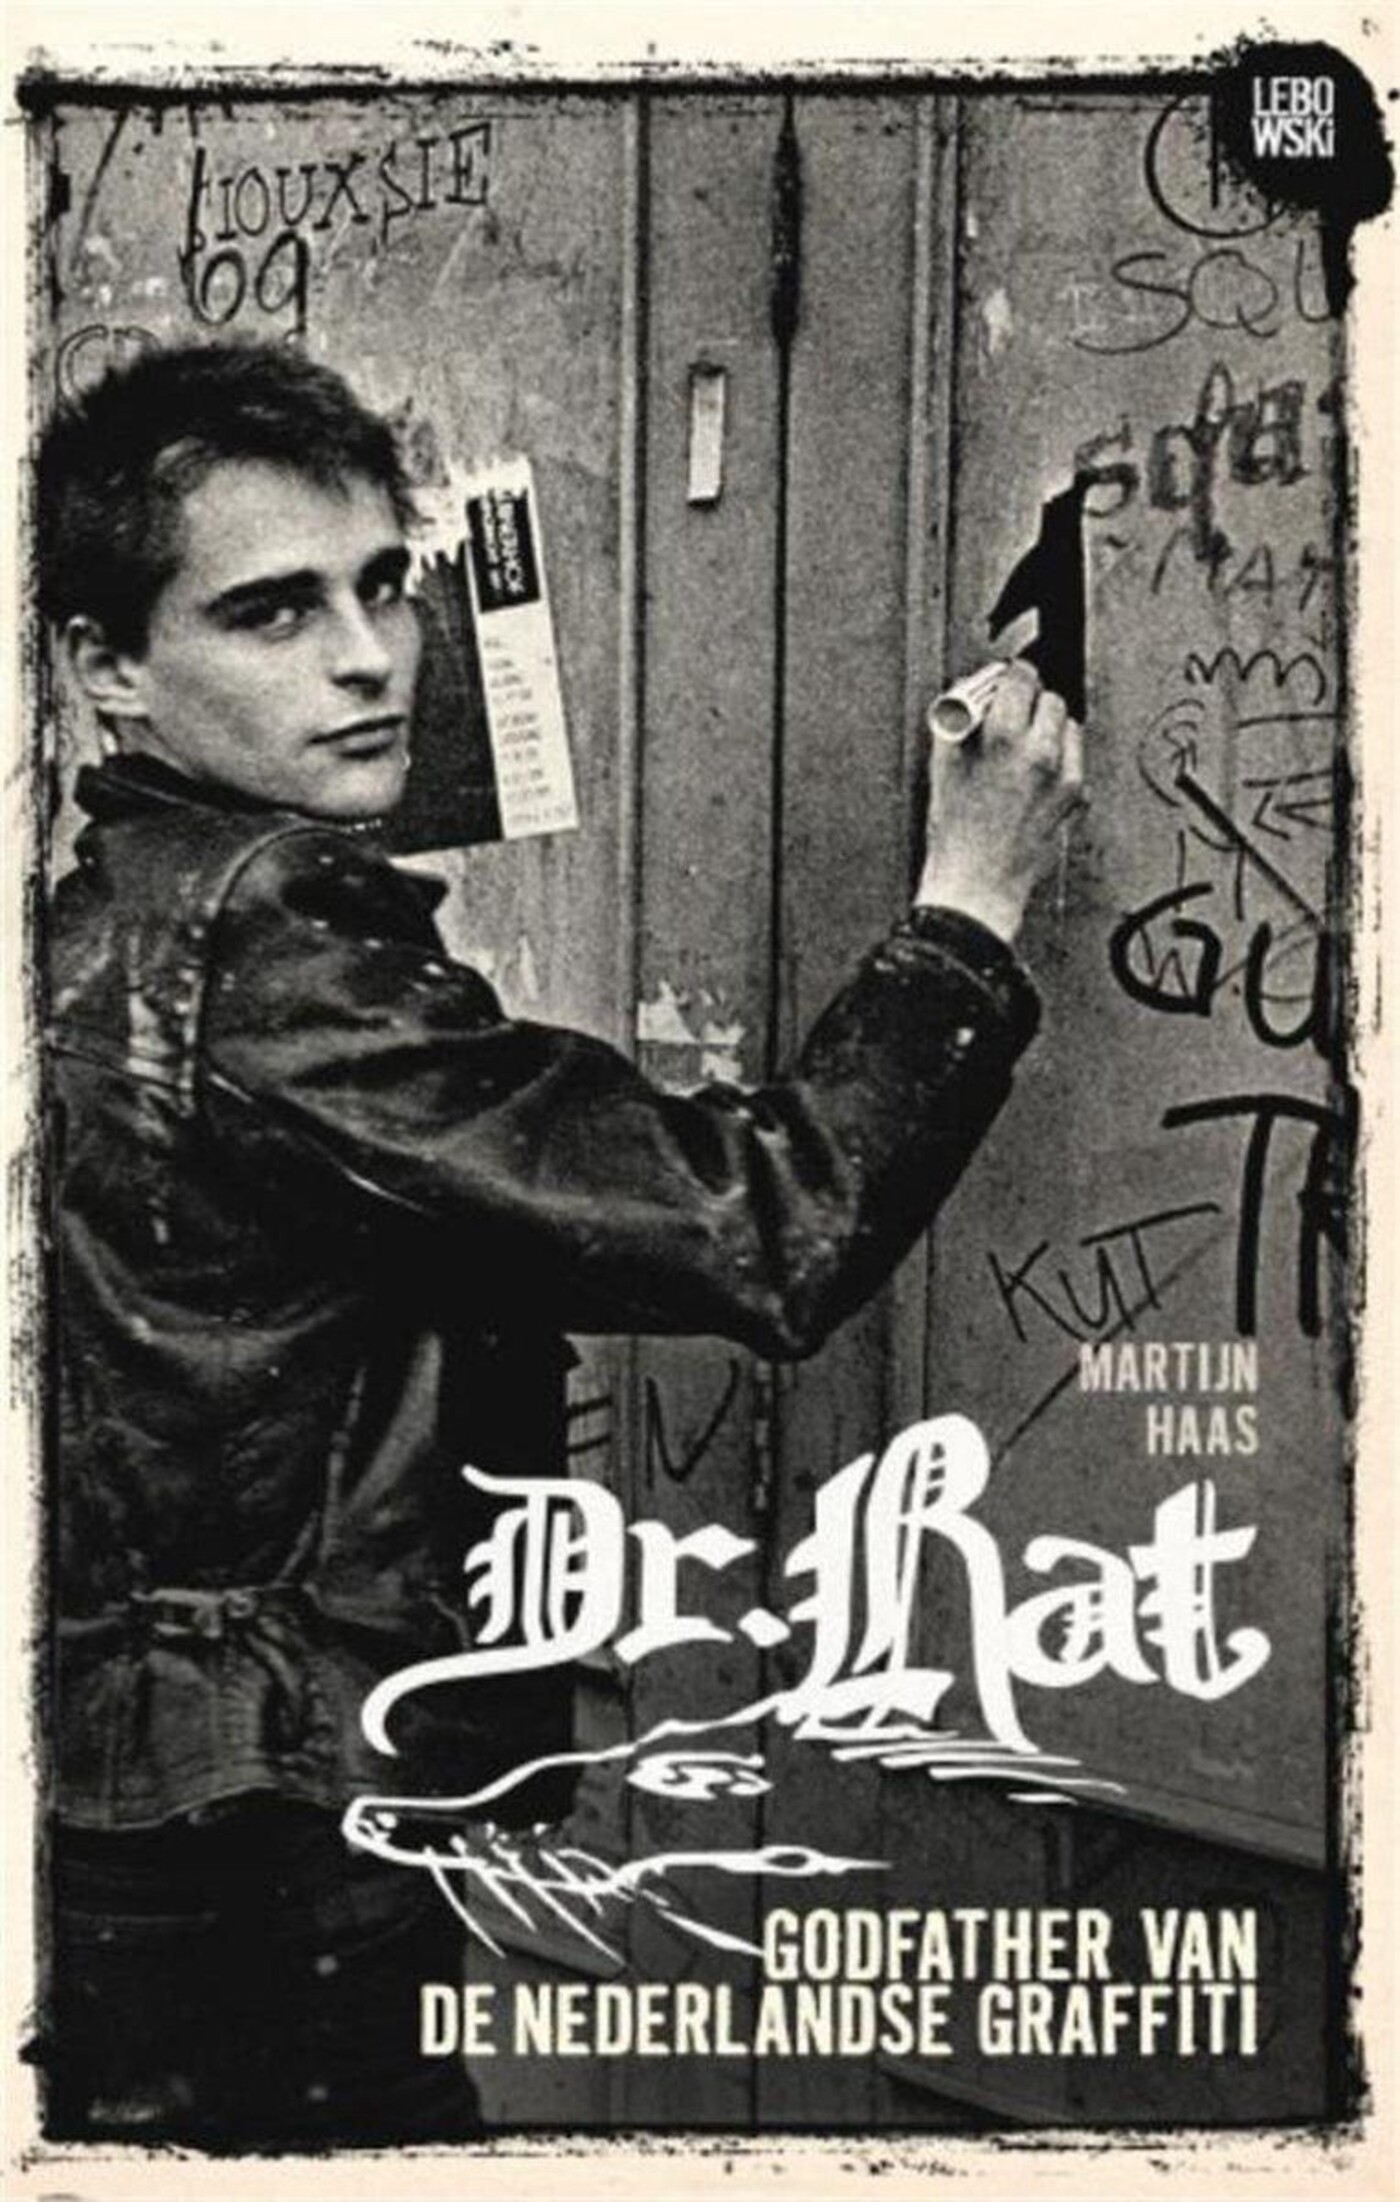 Dr. Rat - Het korte leven van een graffiti artiest